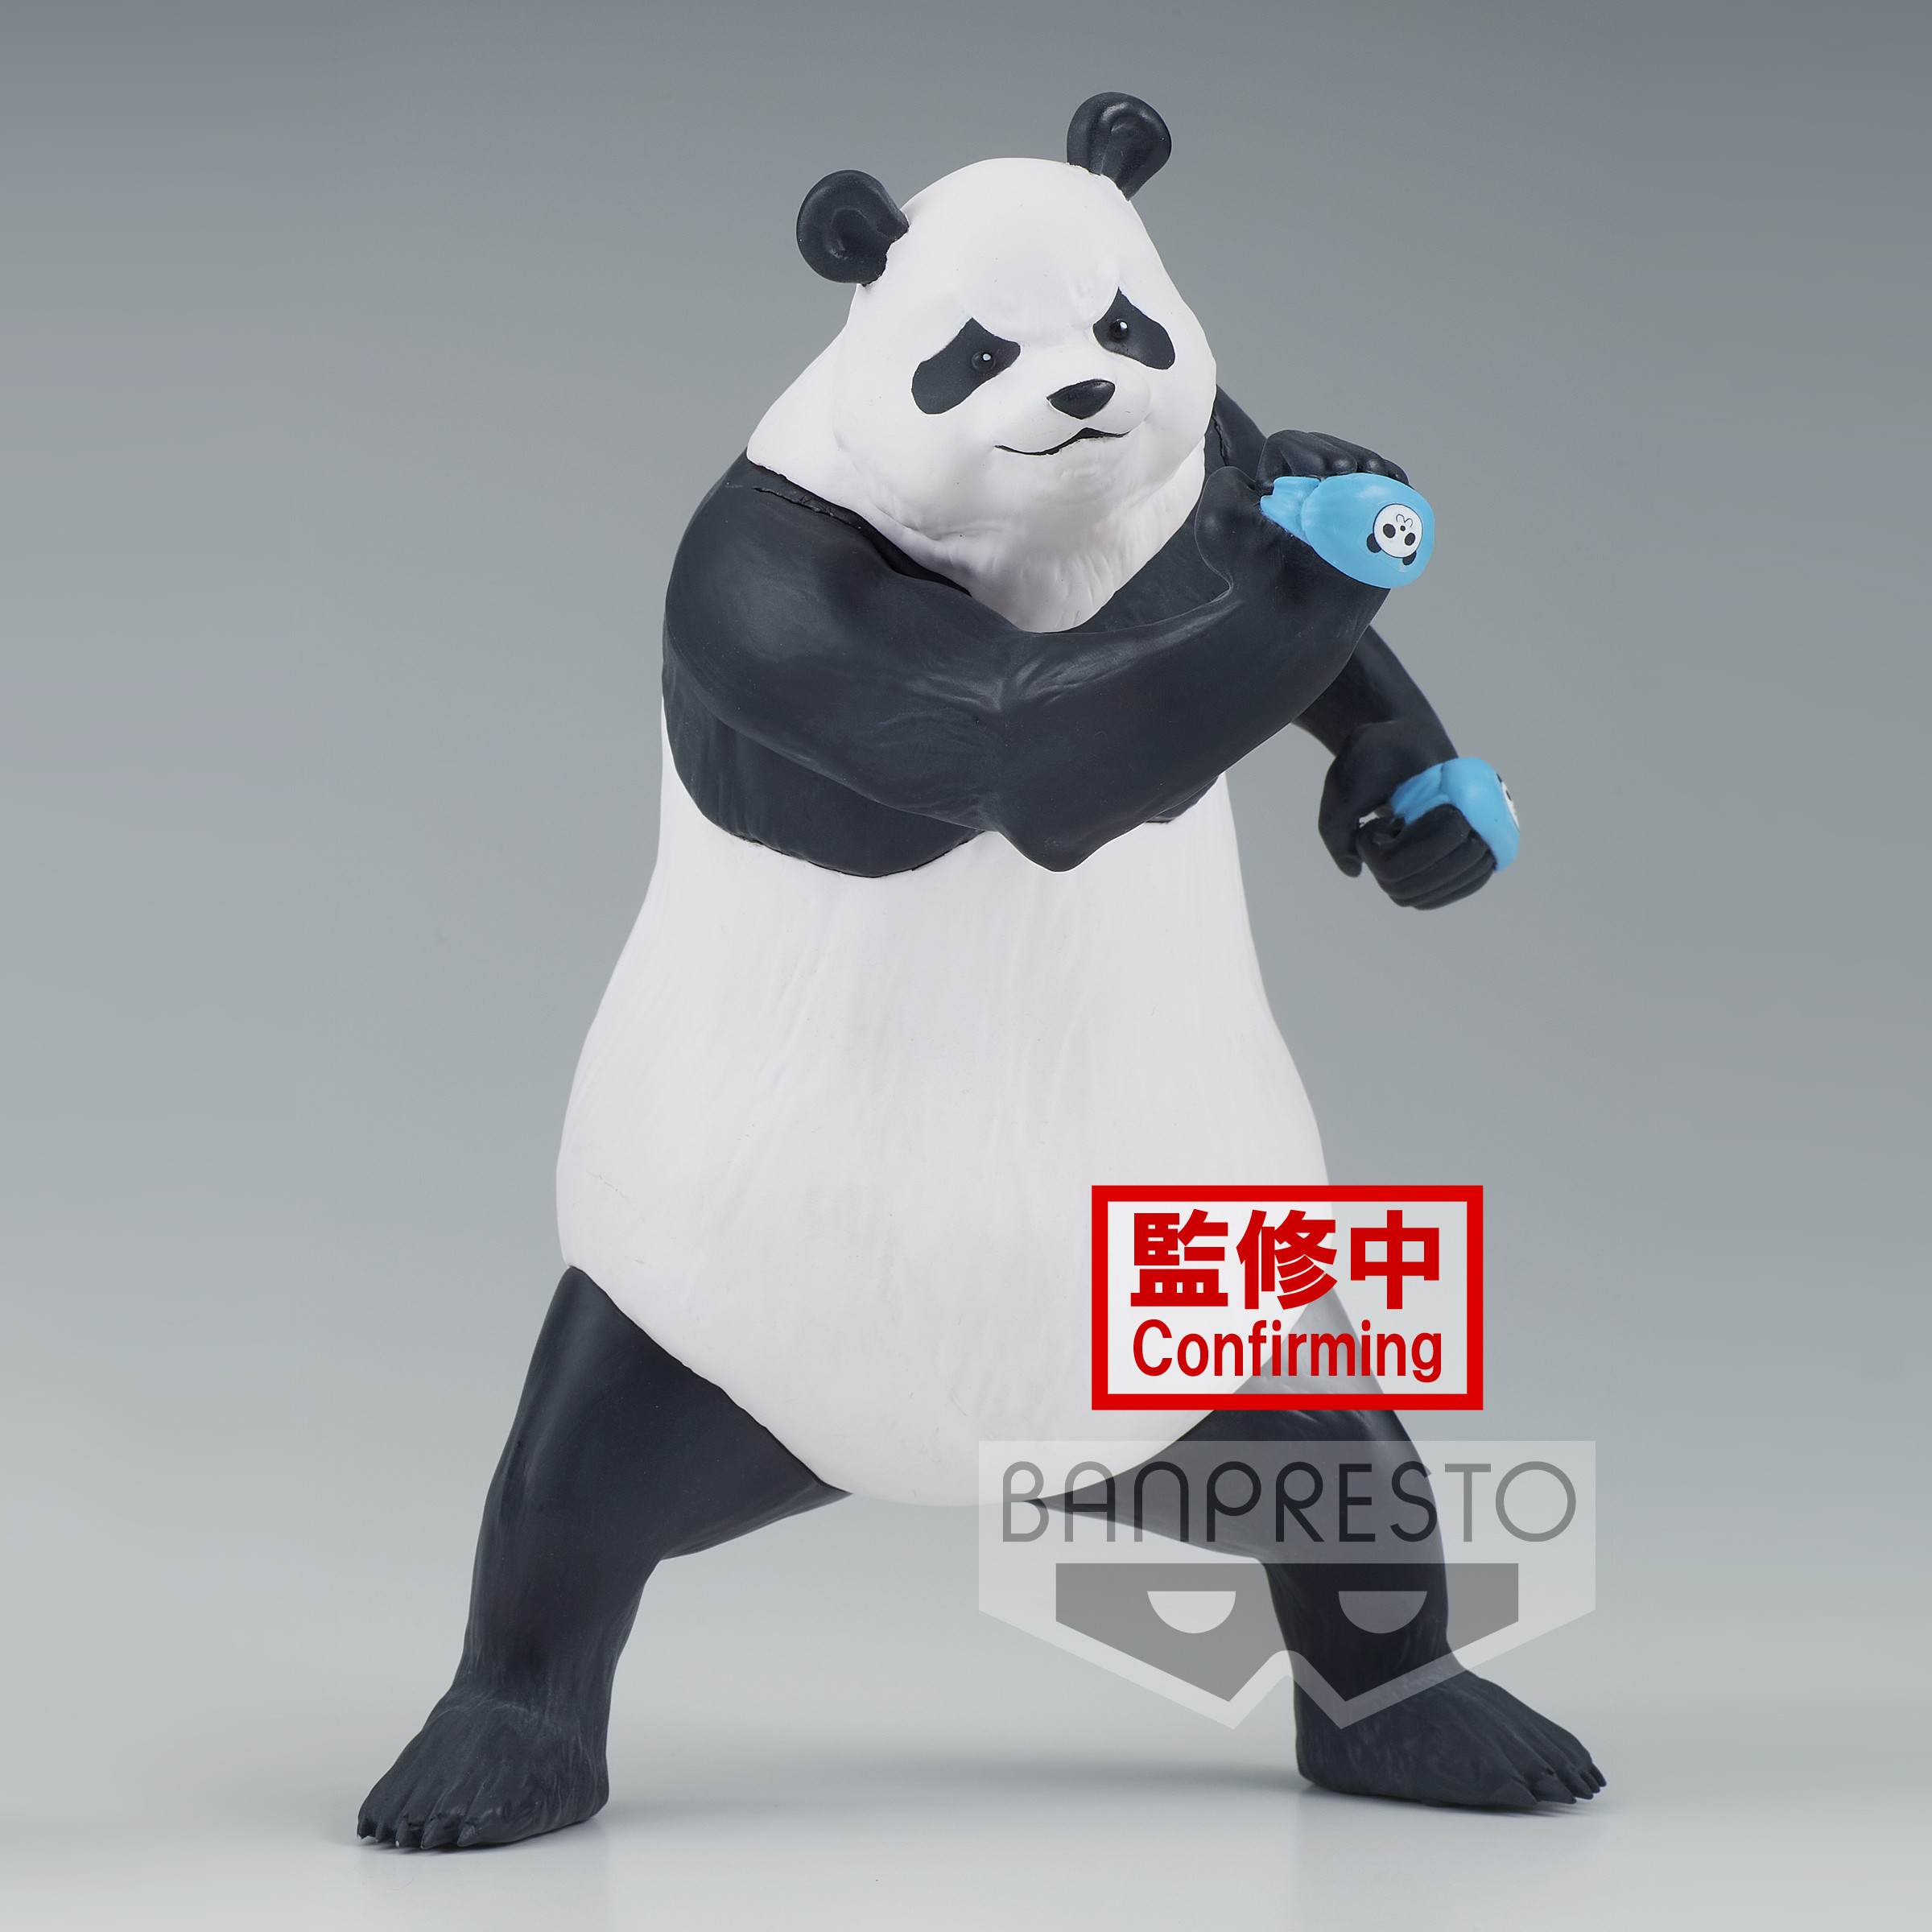 Peluche panda géant 135 cm sur King-jouet